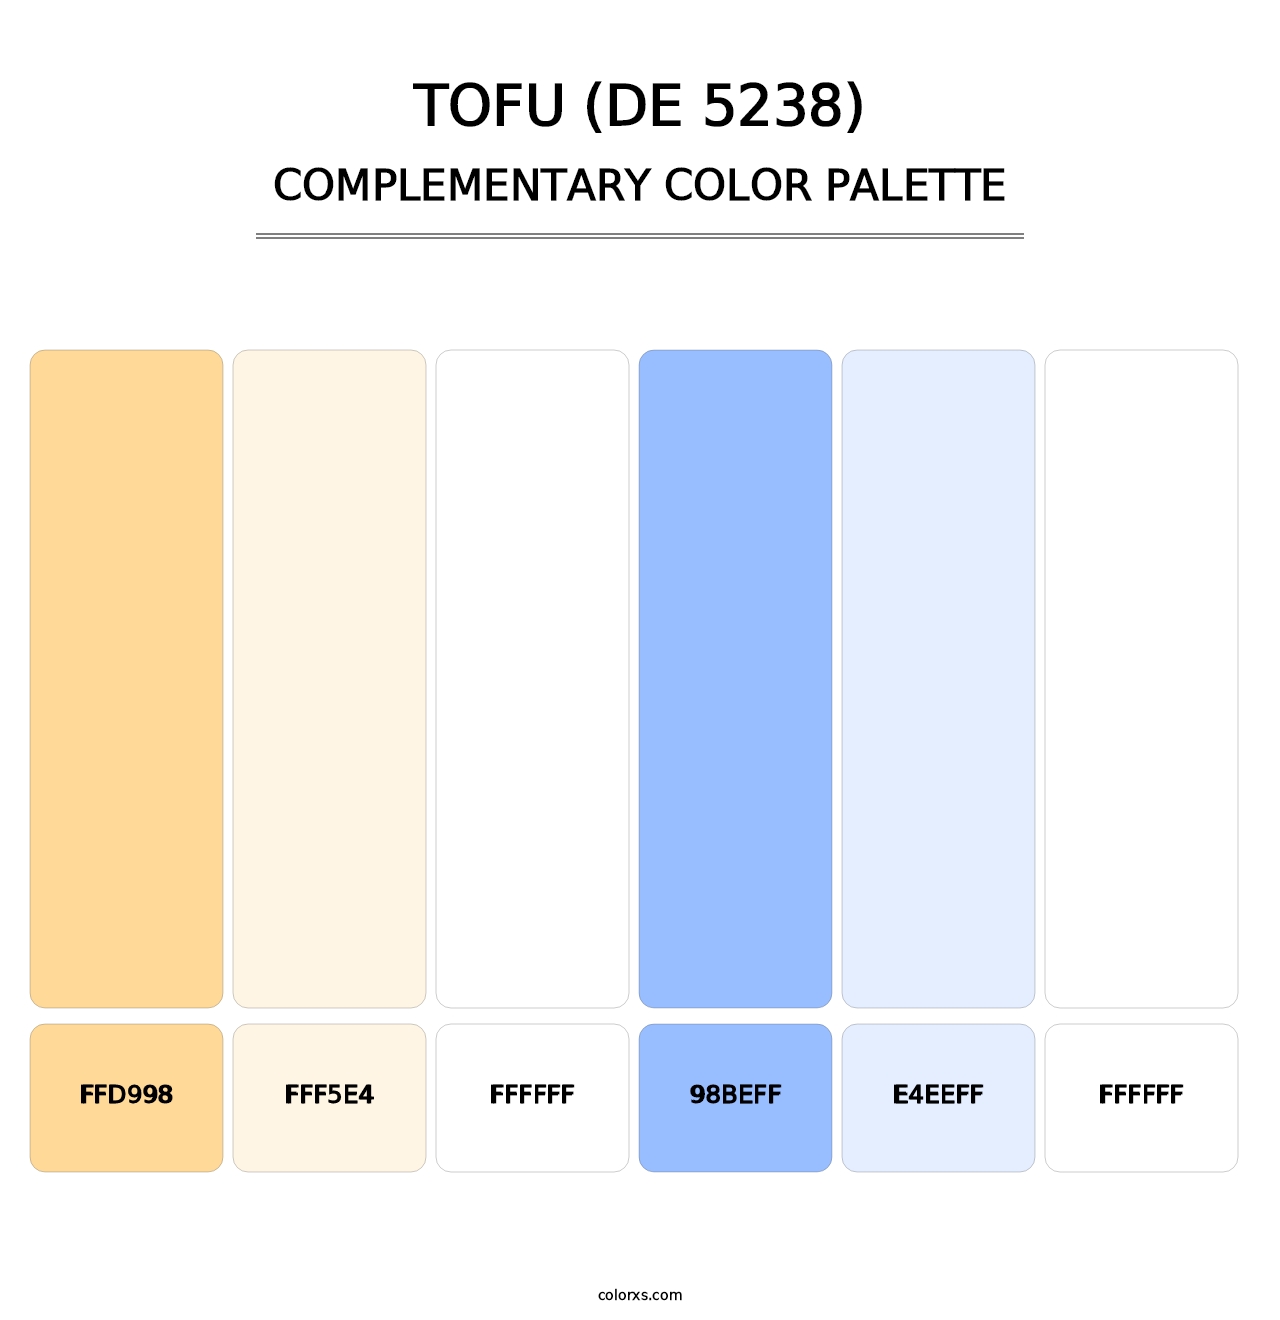 Tofu (DE 5238) - Complementary Color Palette